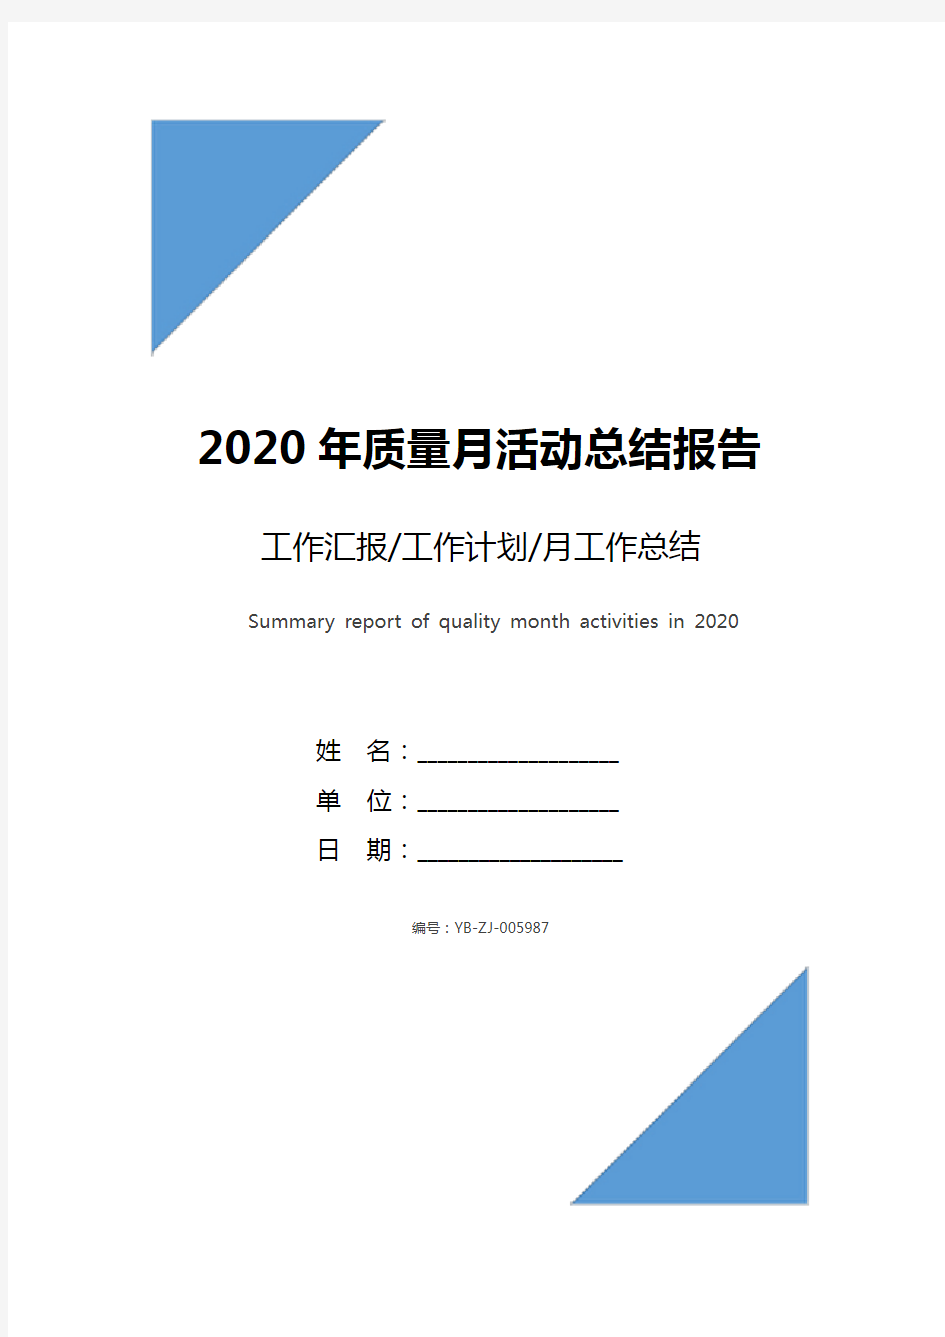 2020年质量月活动总结报告